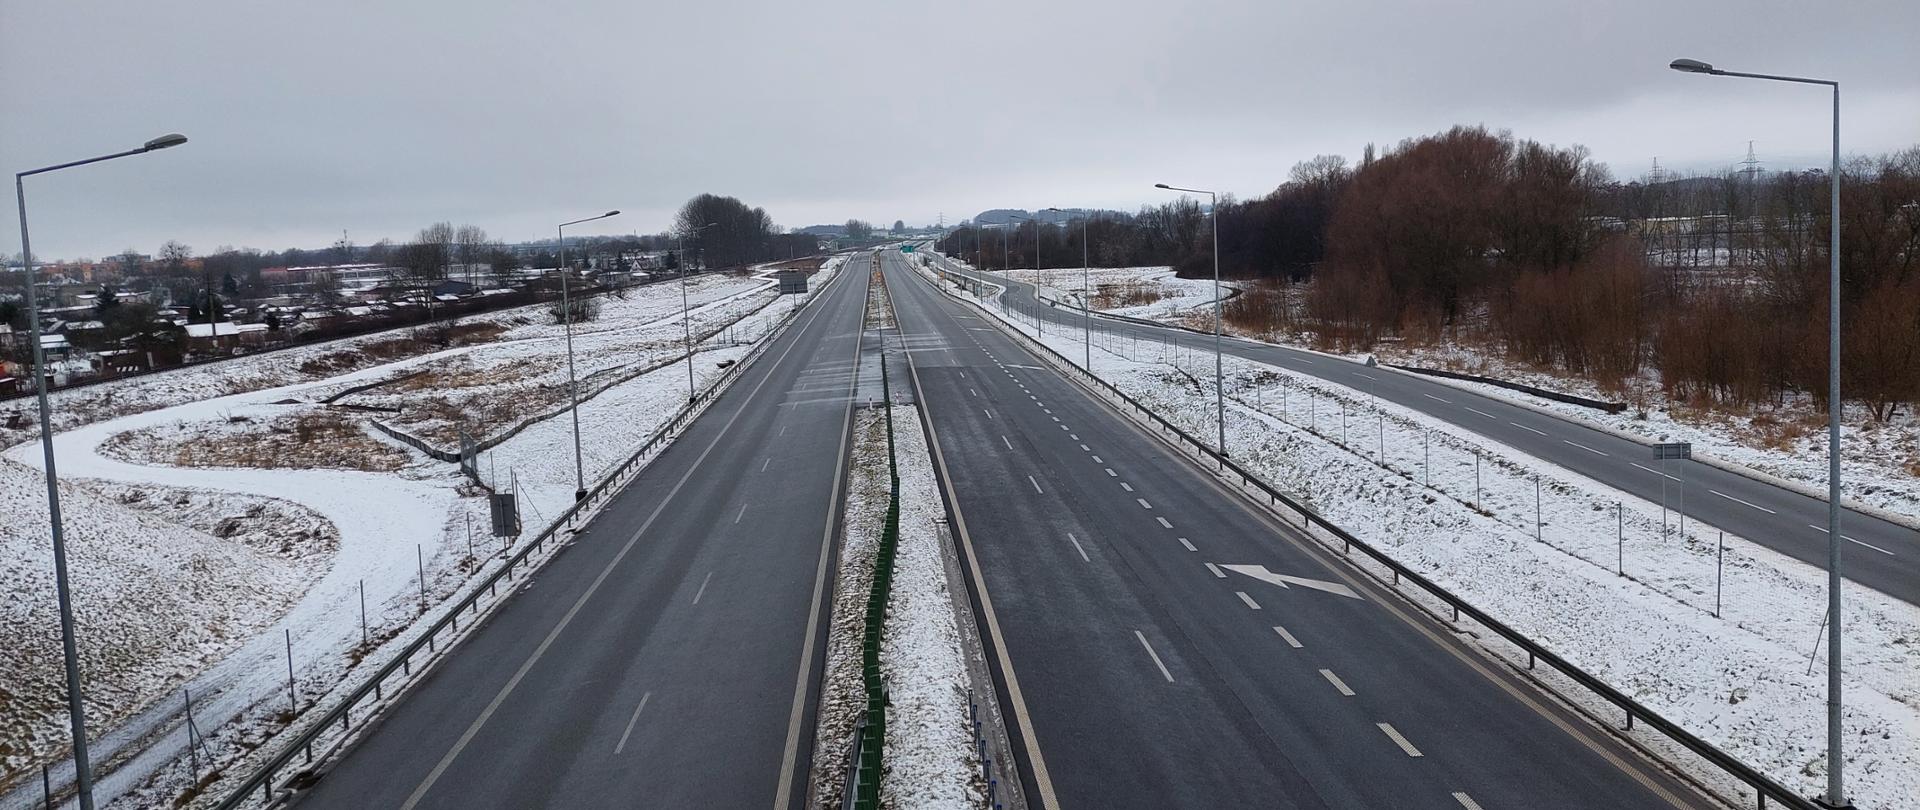 Droga ekspresowa S11 w scenerii zimowej. Dwujezdniowa droga ekspresowa po dwa pasy ruchu w obu kierunkach będąca obwodnicą Szczecinka.